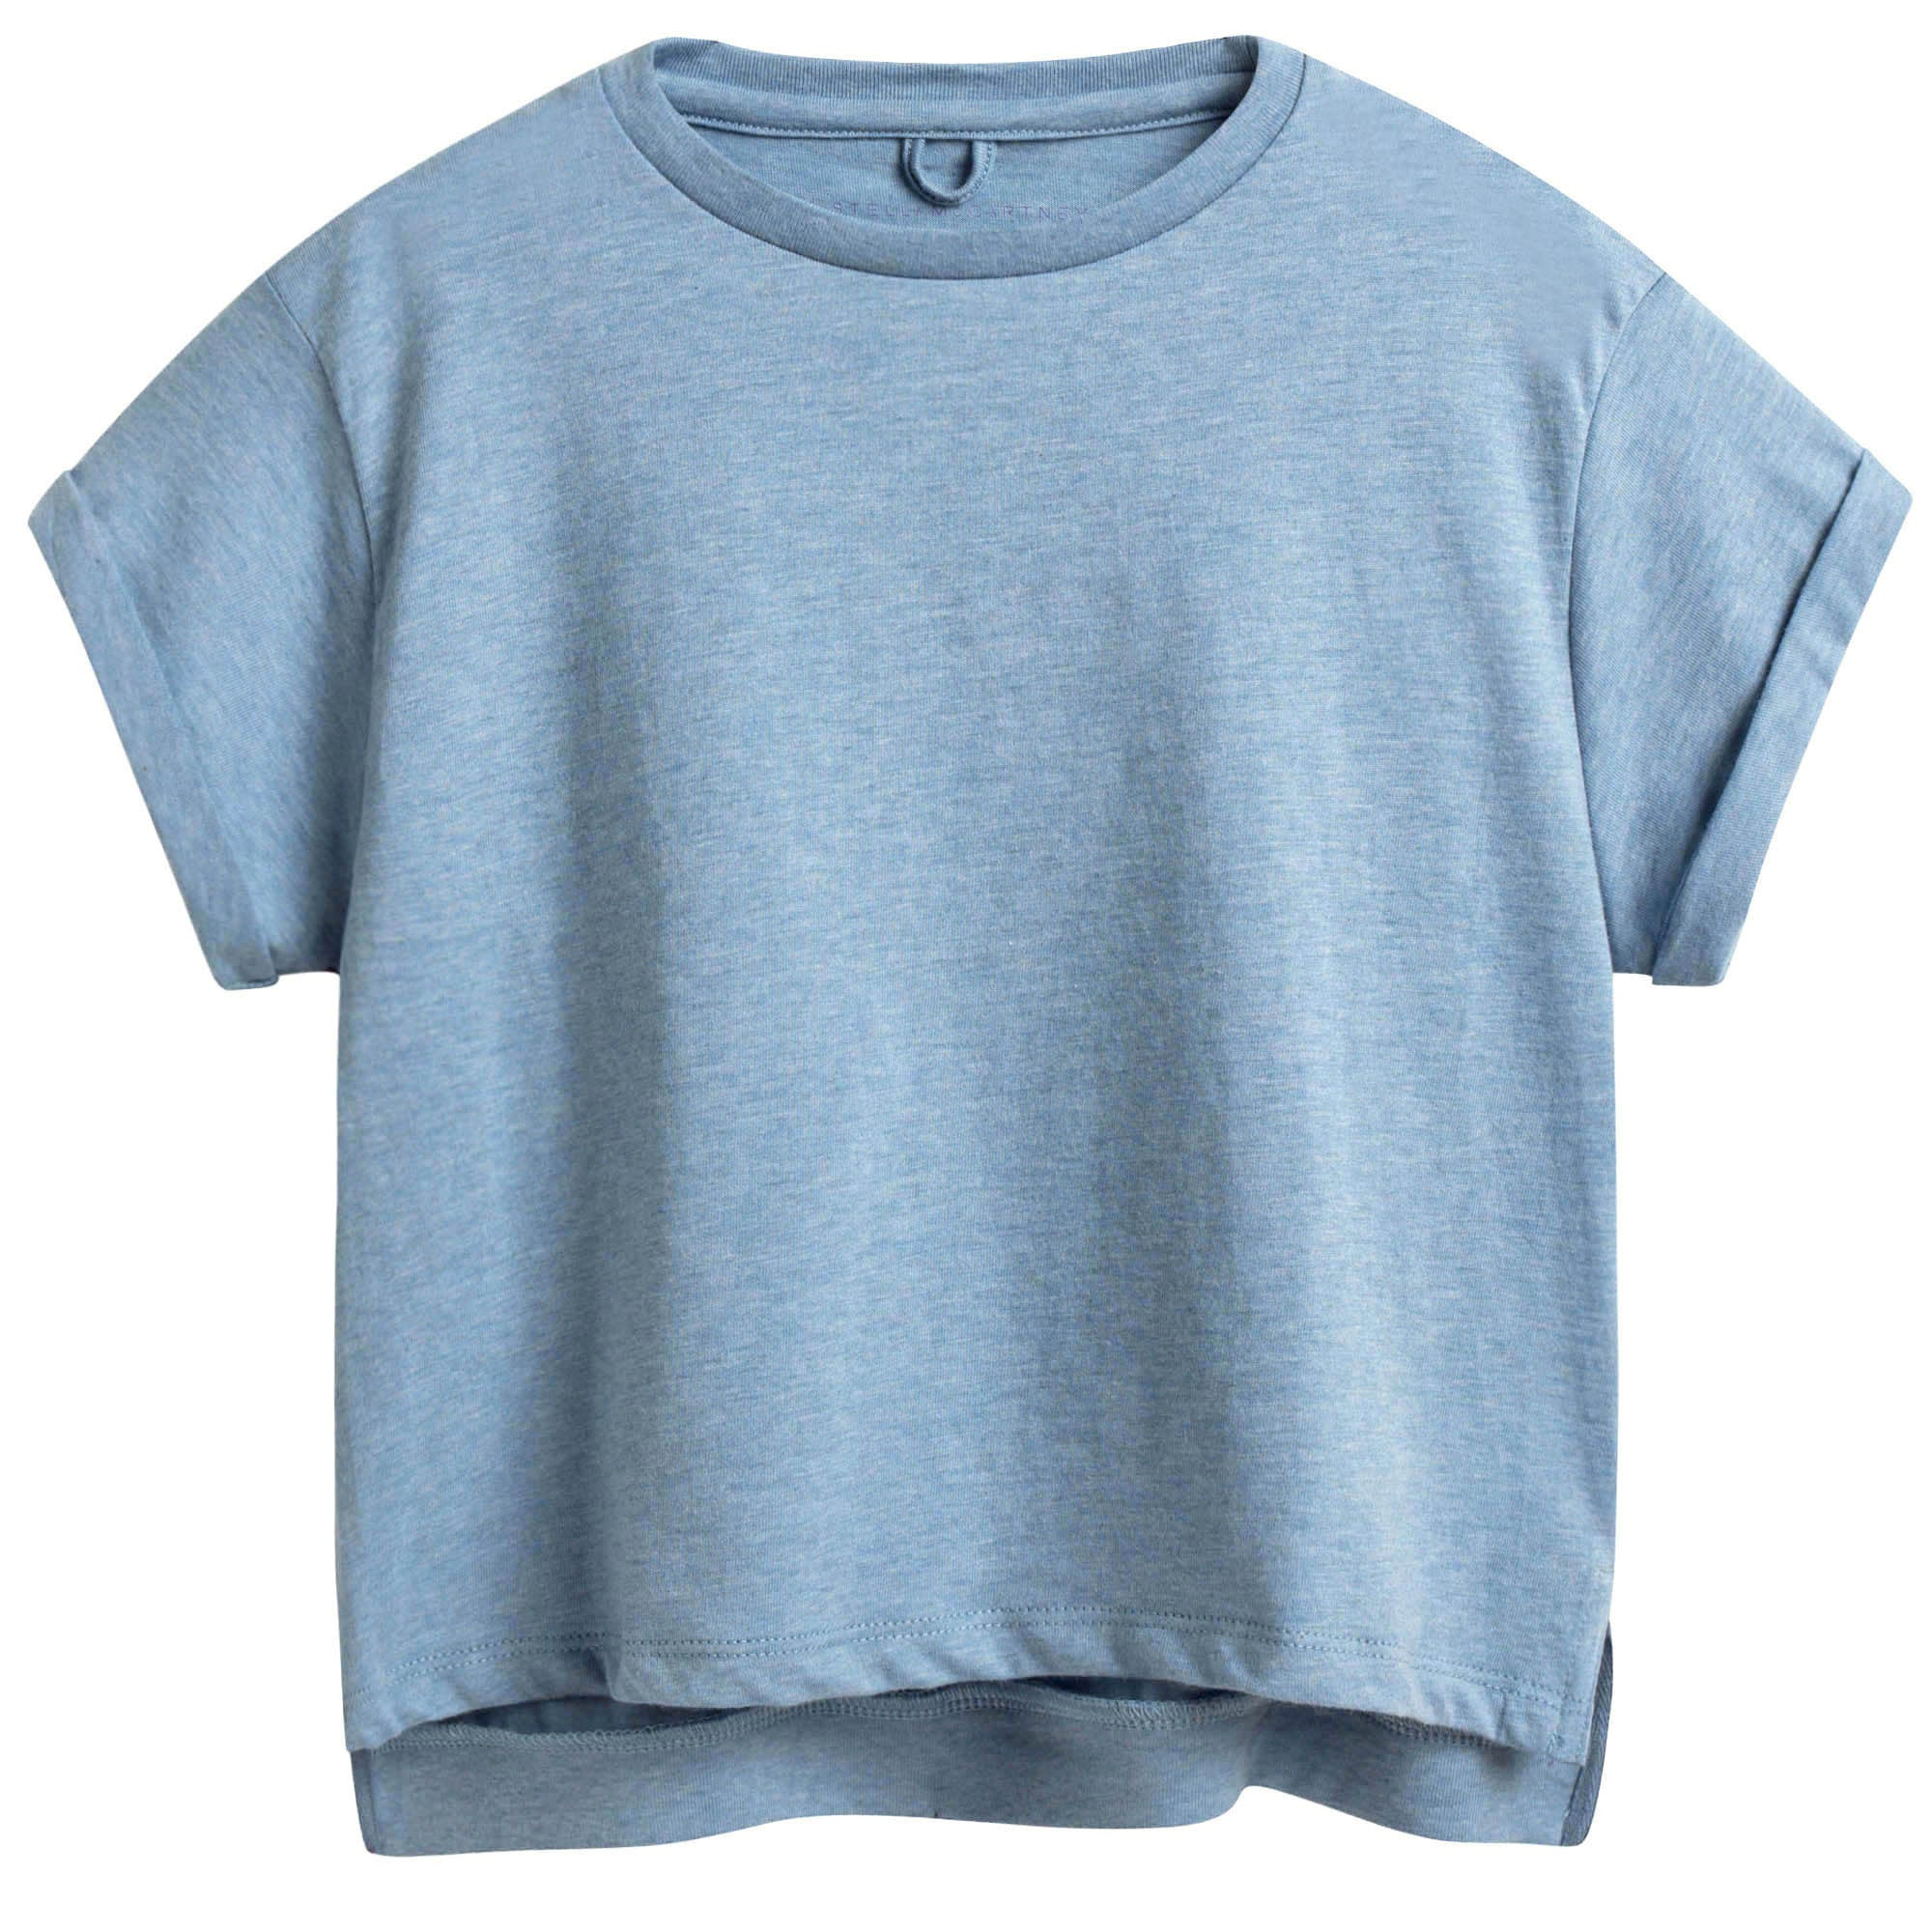 Girls Blue Cotton T-shirt